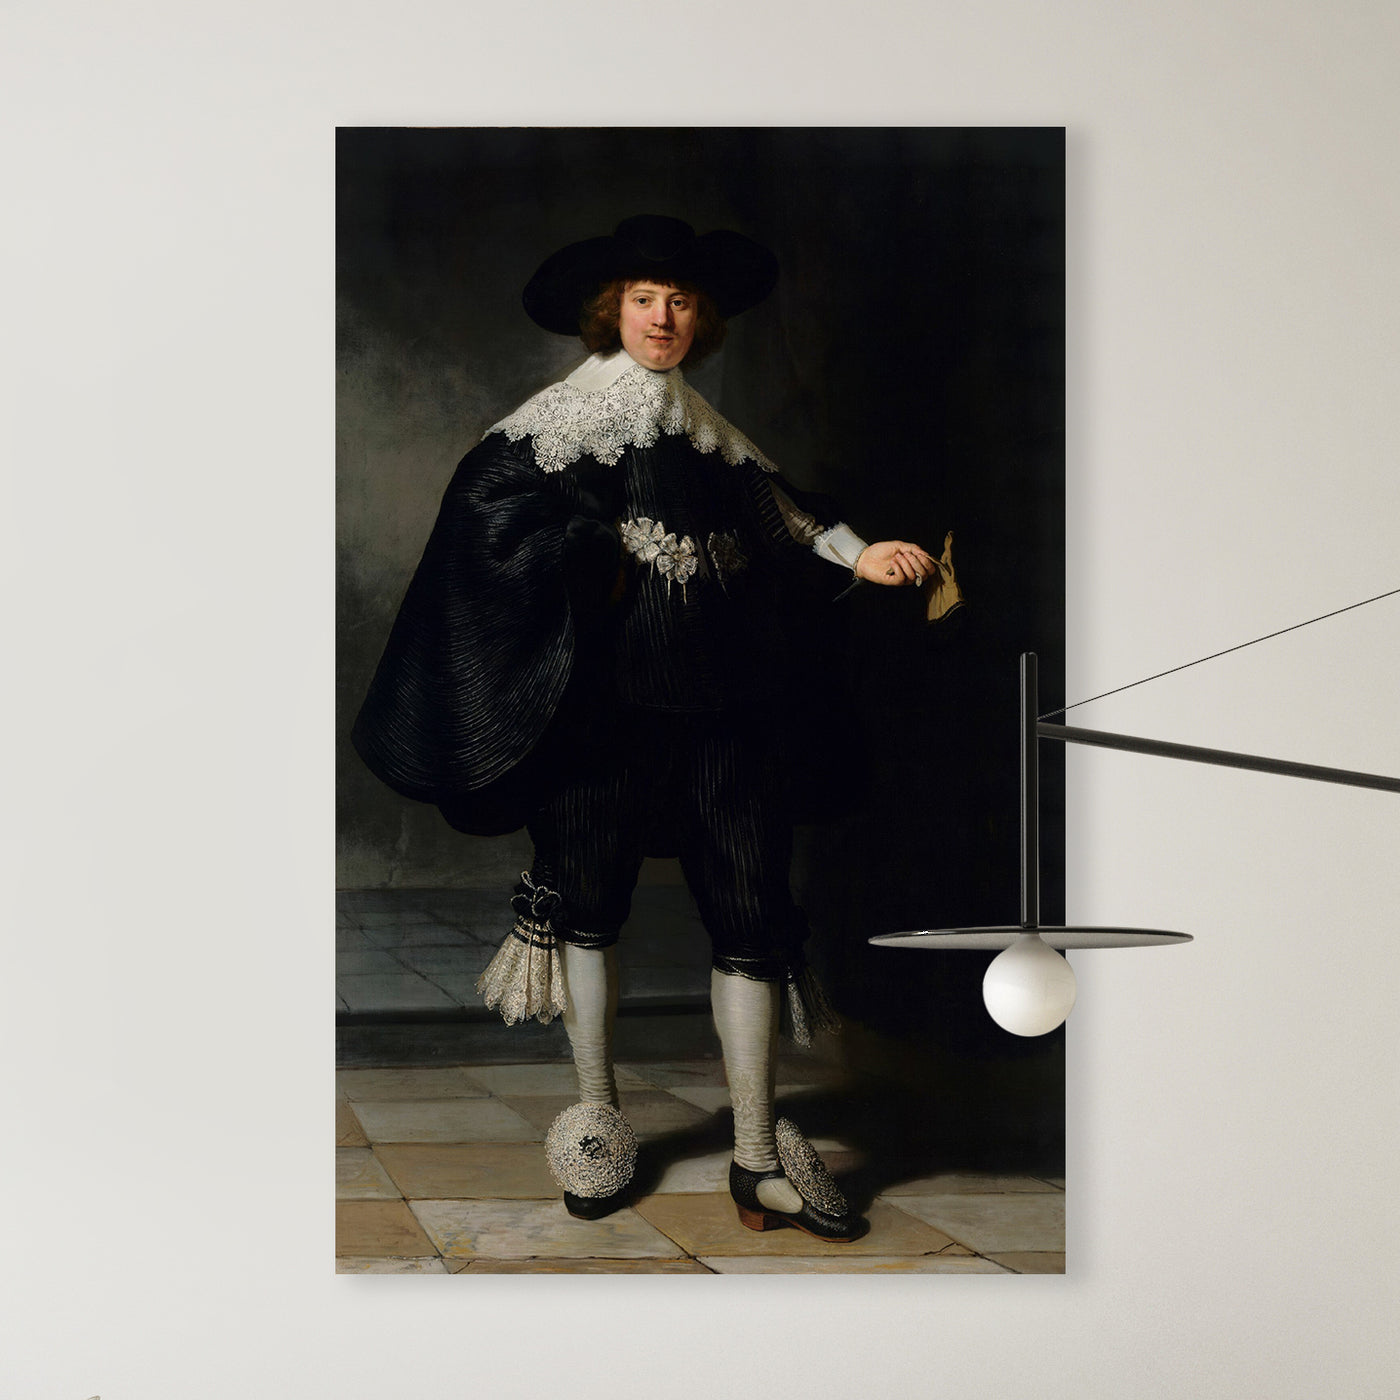 Marten Soolmans, Rembrandt van Rijn, 1634